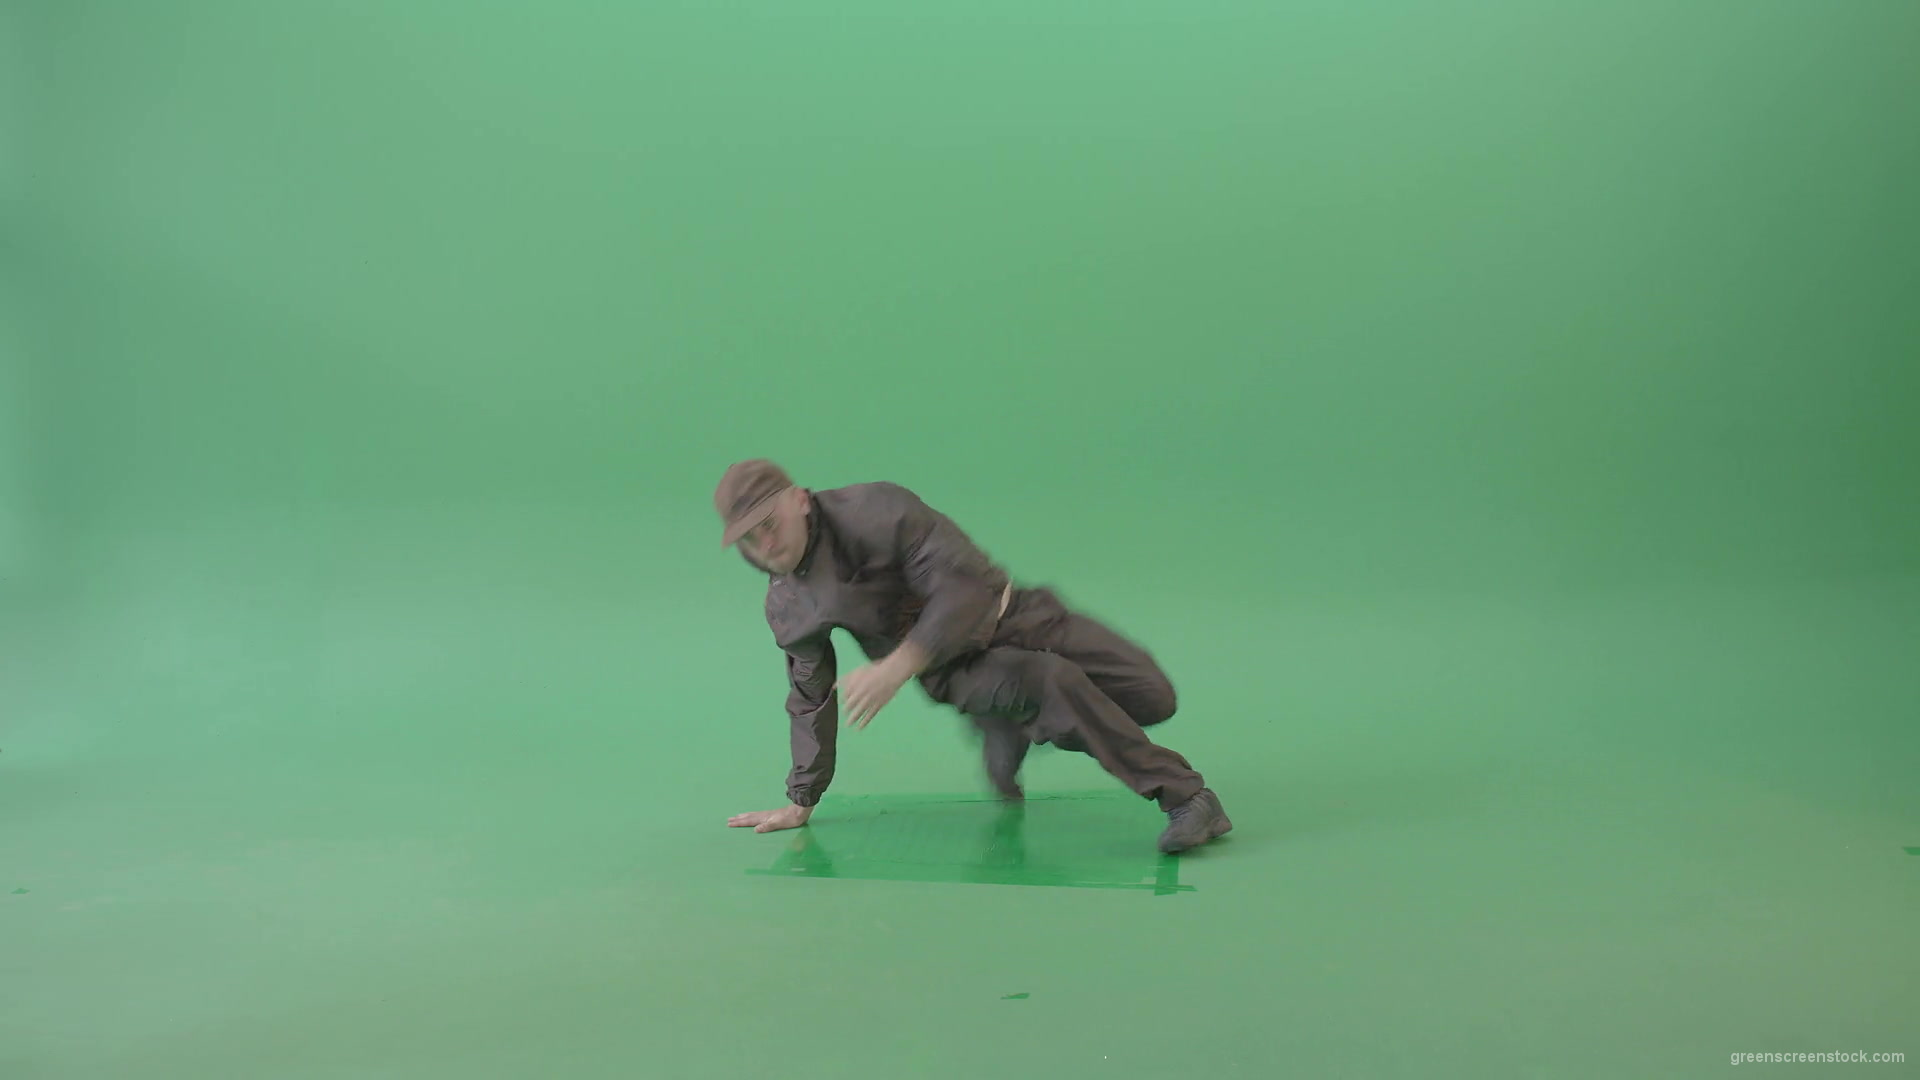 Man-dancing-breakdance-on-green-screen-4K-Video-Footage-1920_008 Green Screen Stock